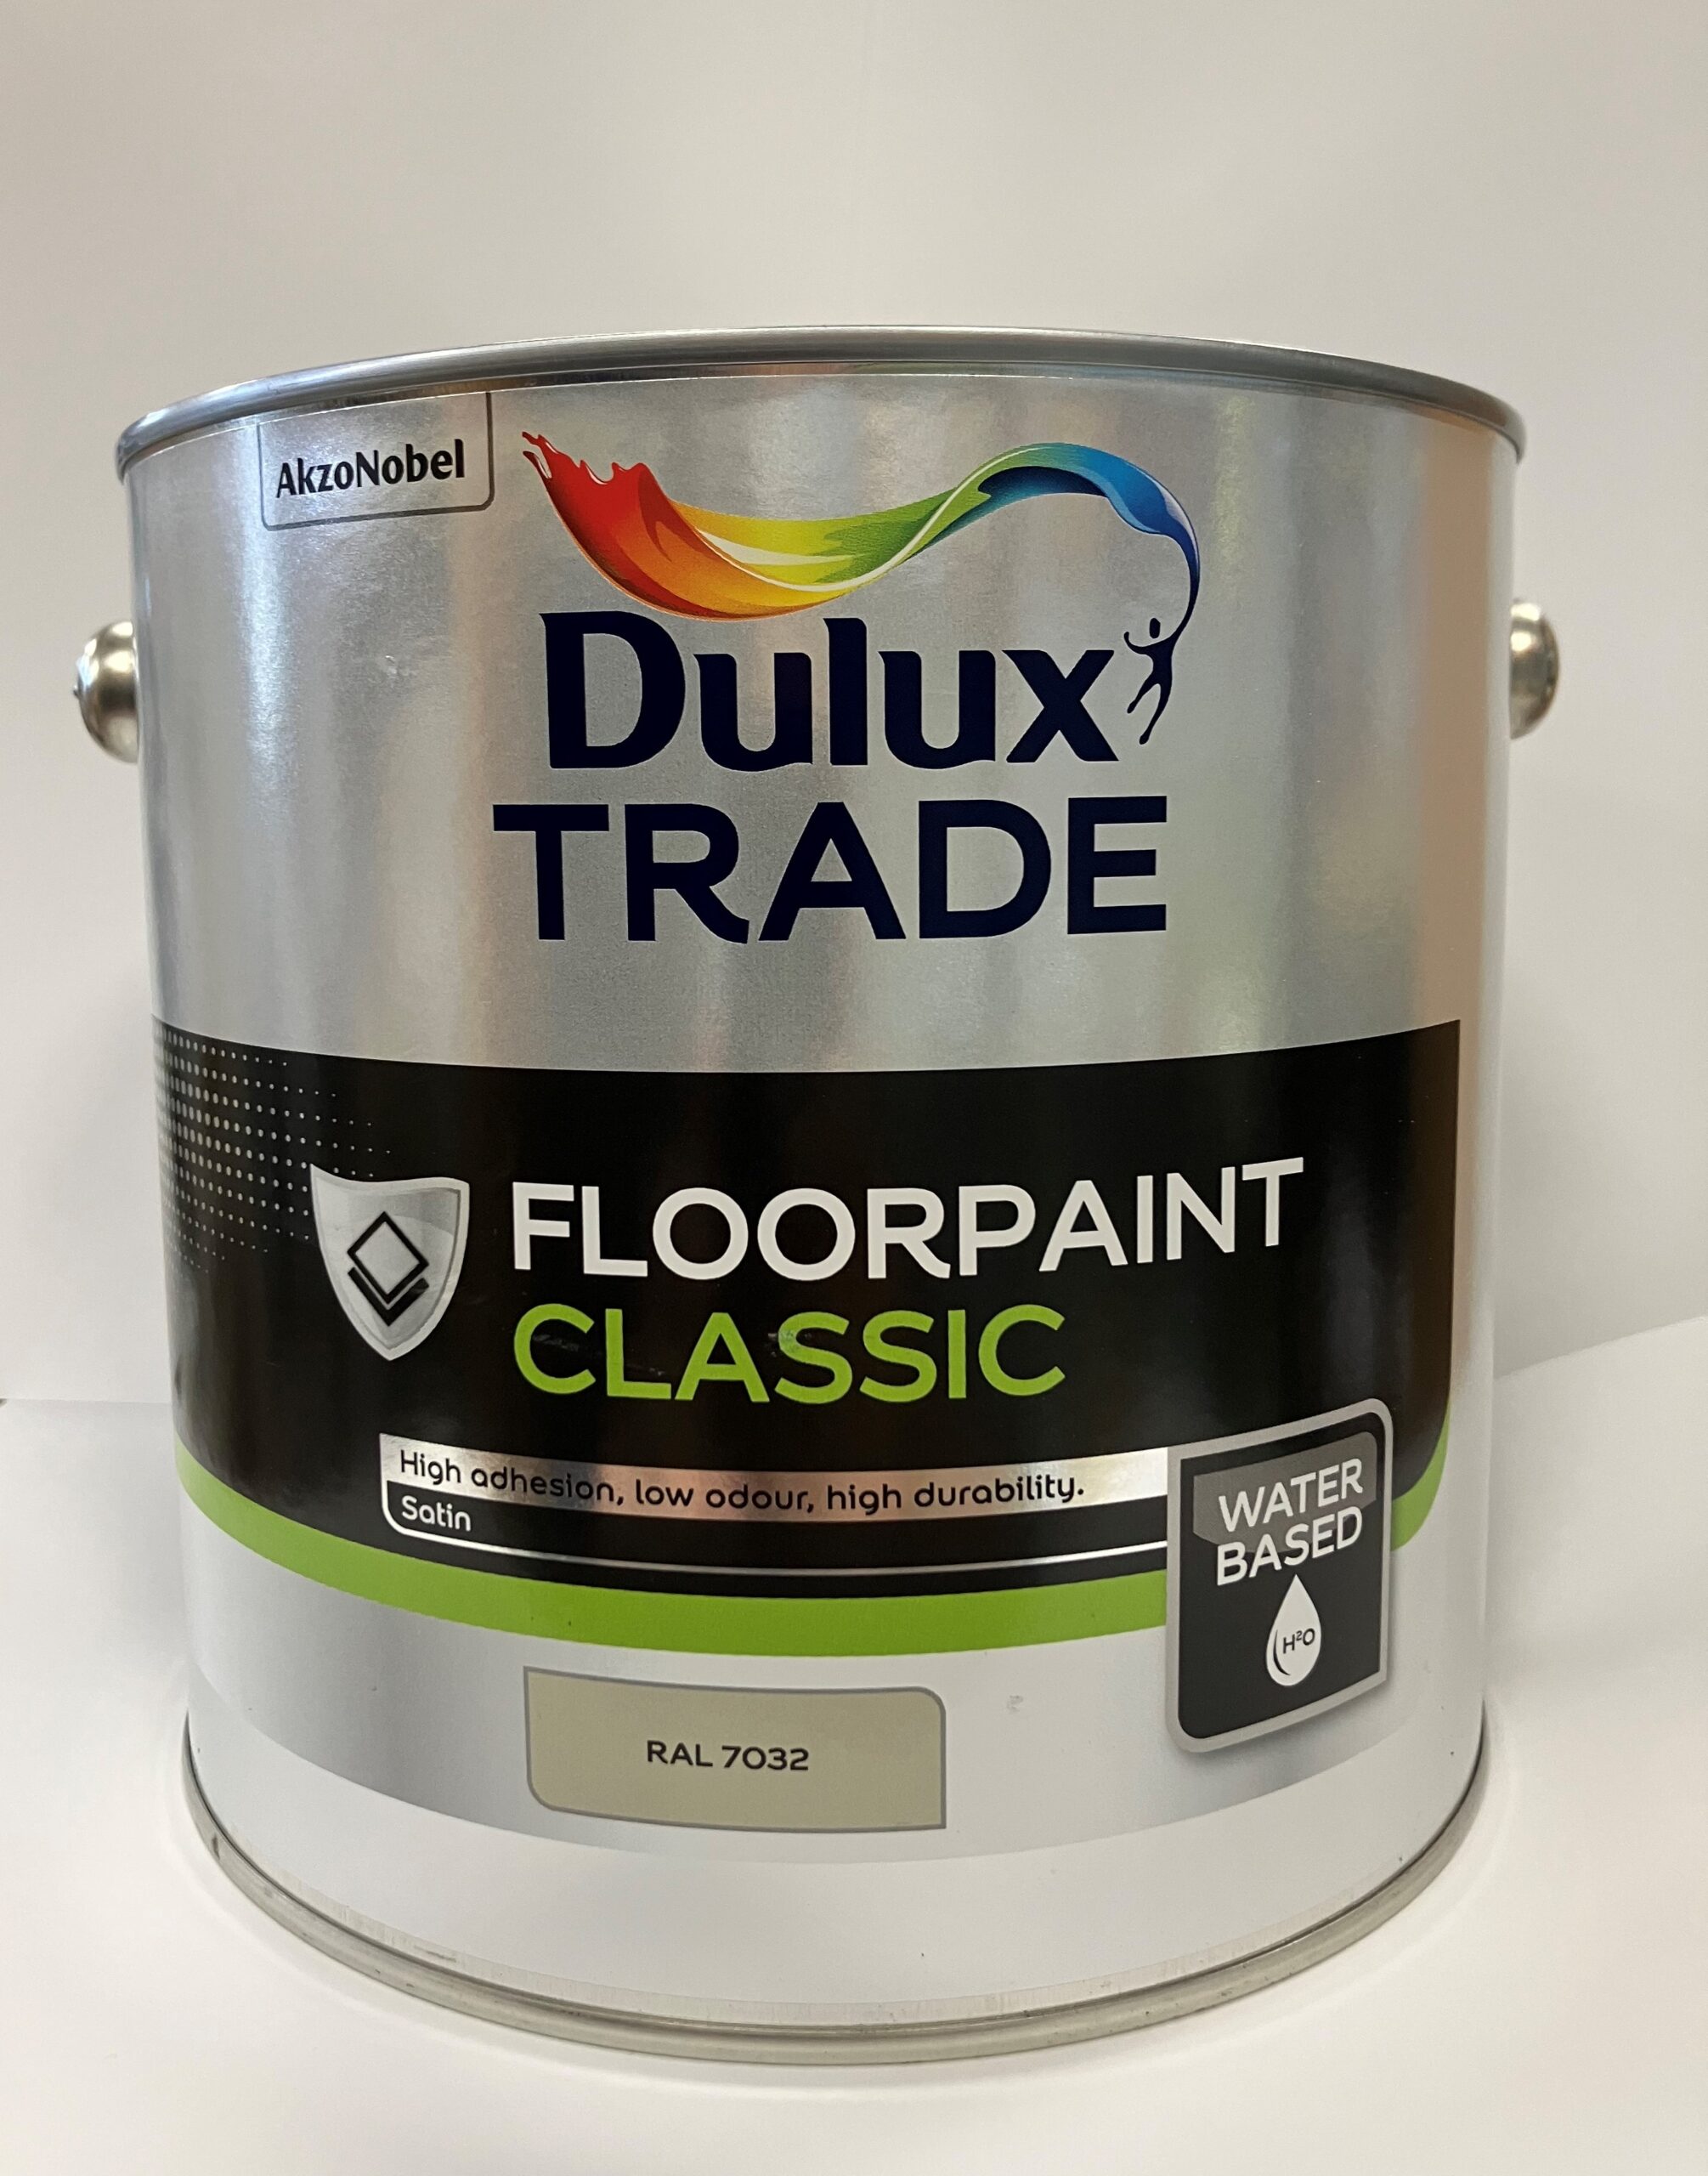 Dulux Floorpaint Classic 3kg-image